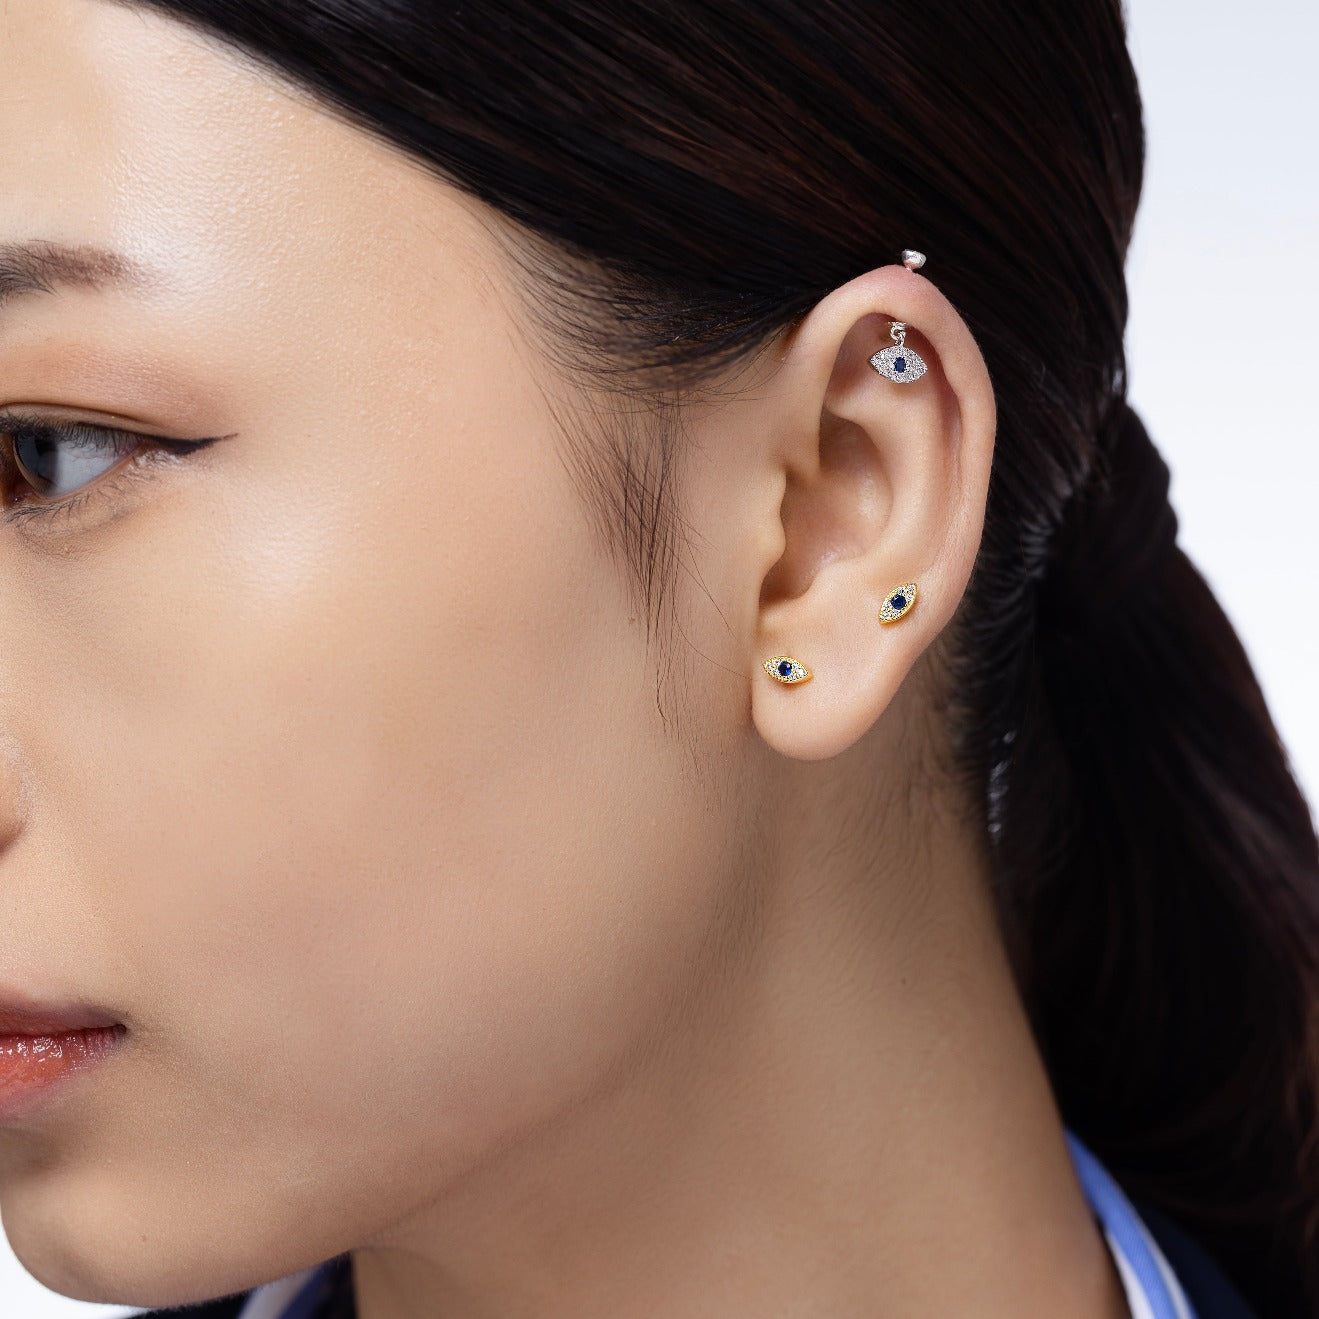 MODRSA Cartilage Earring Cartilage Piercing Jewelry India | Ubuy